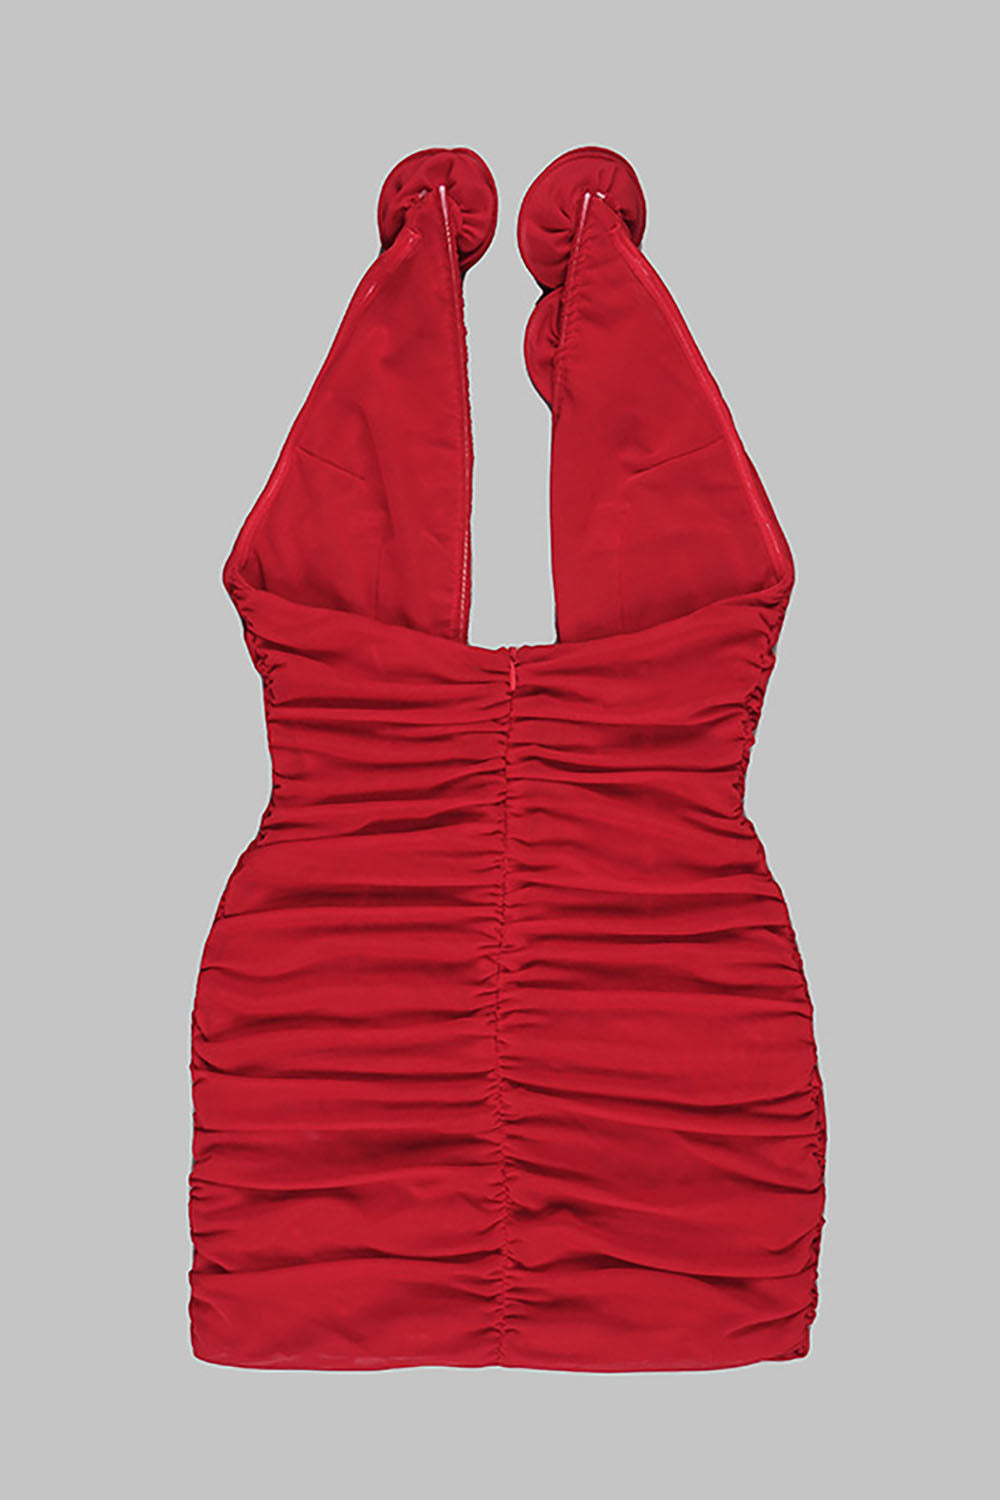 Mini vestido vermelho sem alças franzido